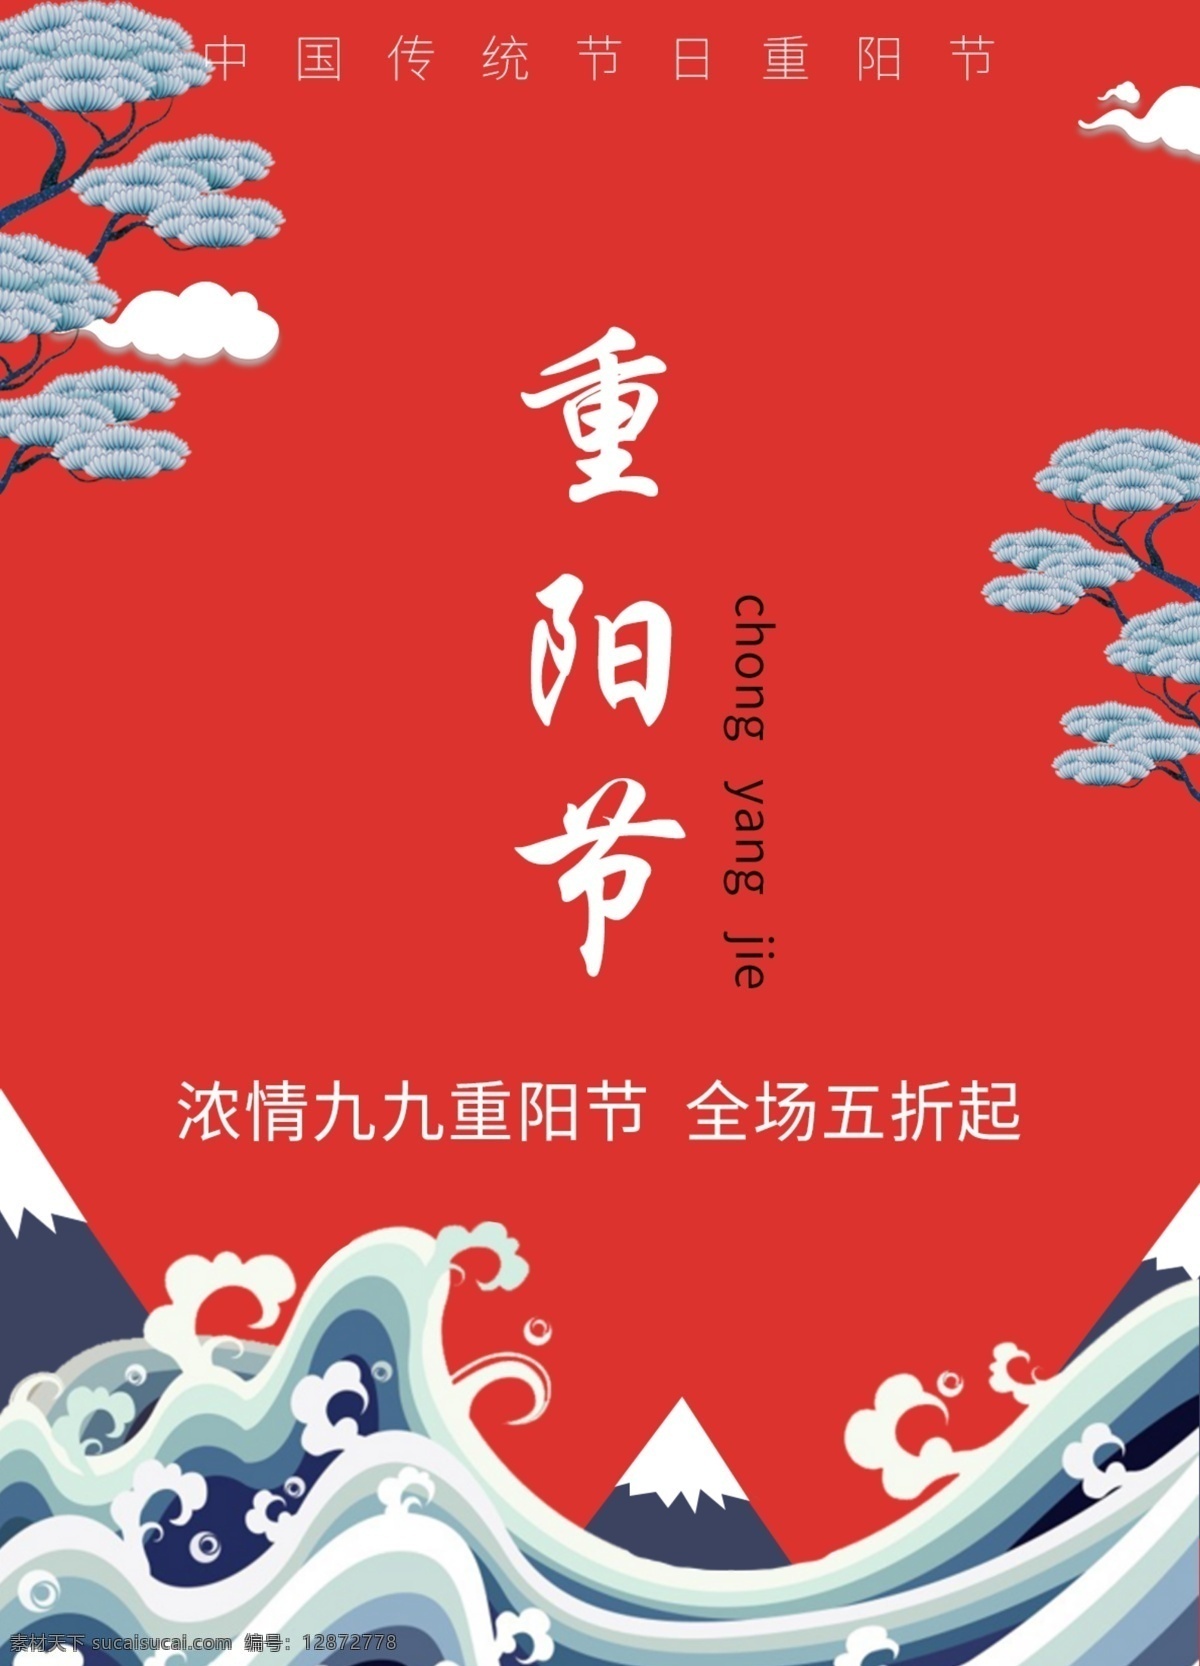 重阳节 全场 五 折 海报 九九 促销 打折 传统节日